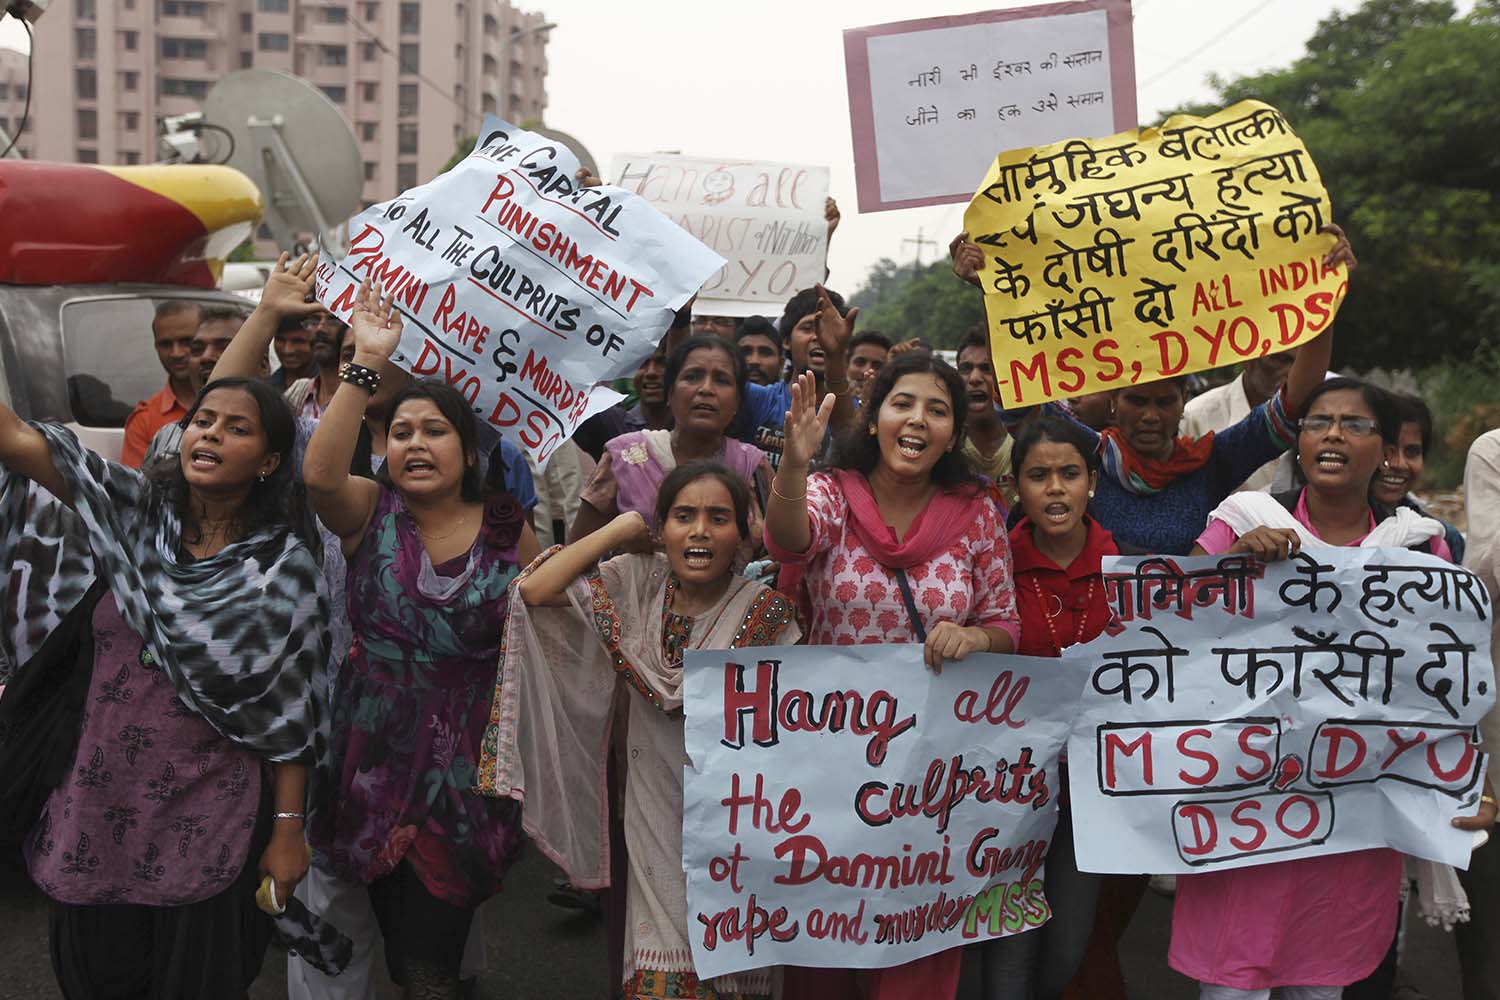 Los cuatro hombres acusados de violar a una joven en Nueva Delhi han sido condenados a la horca